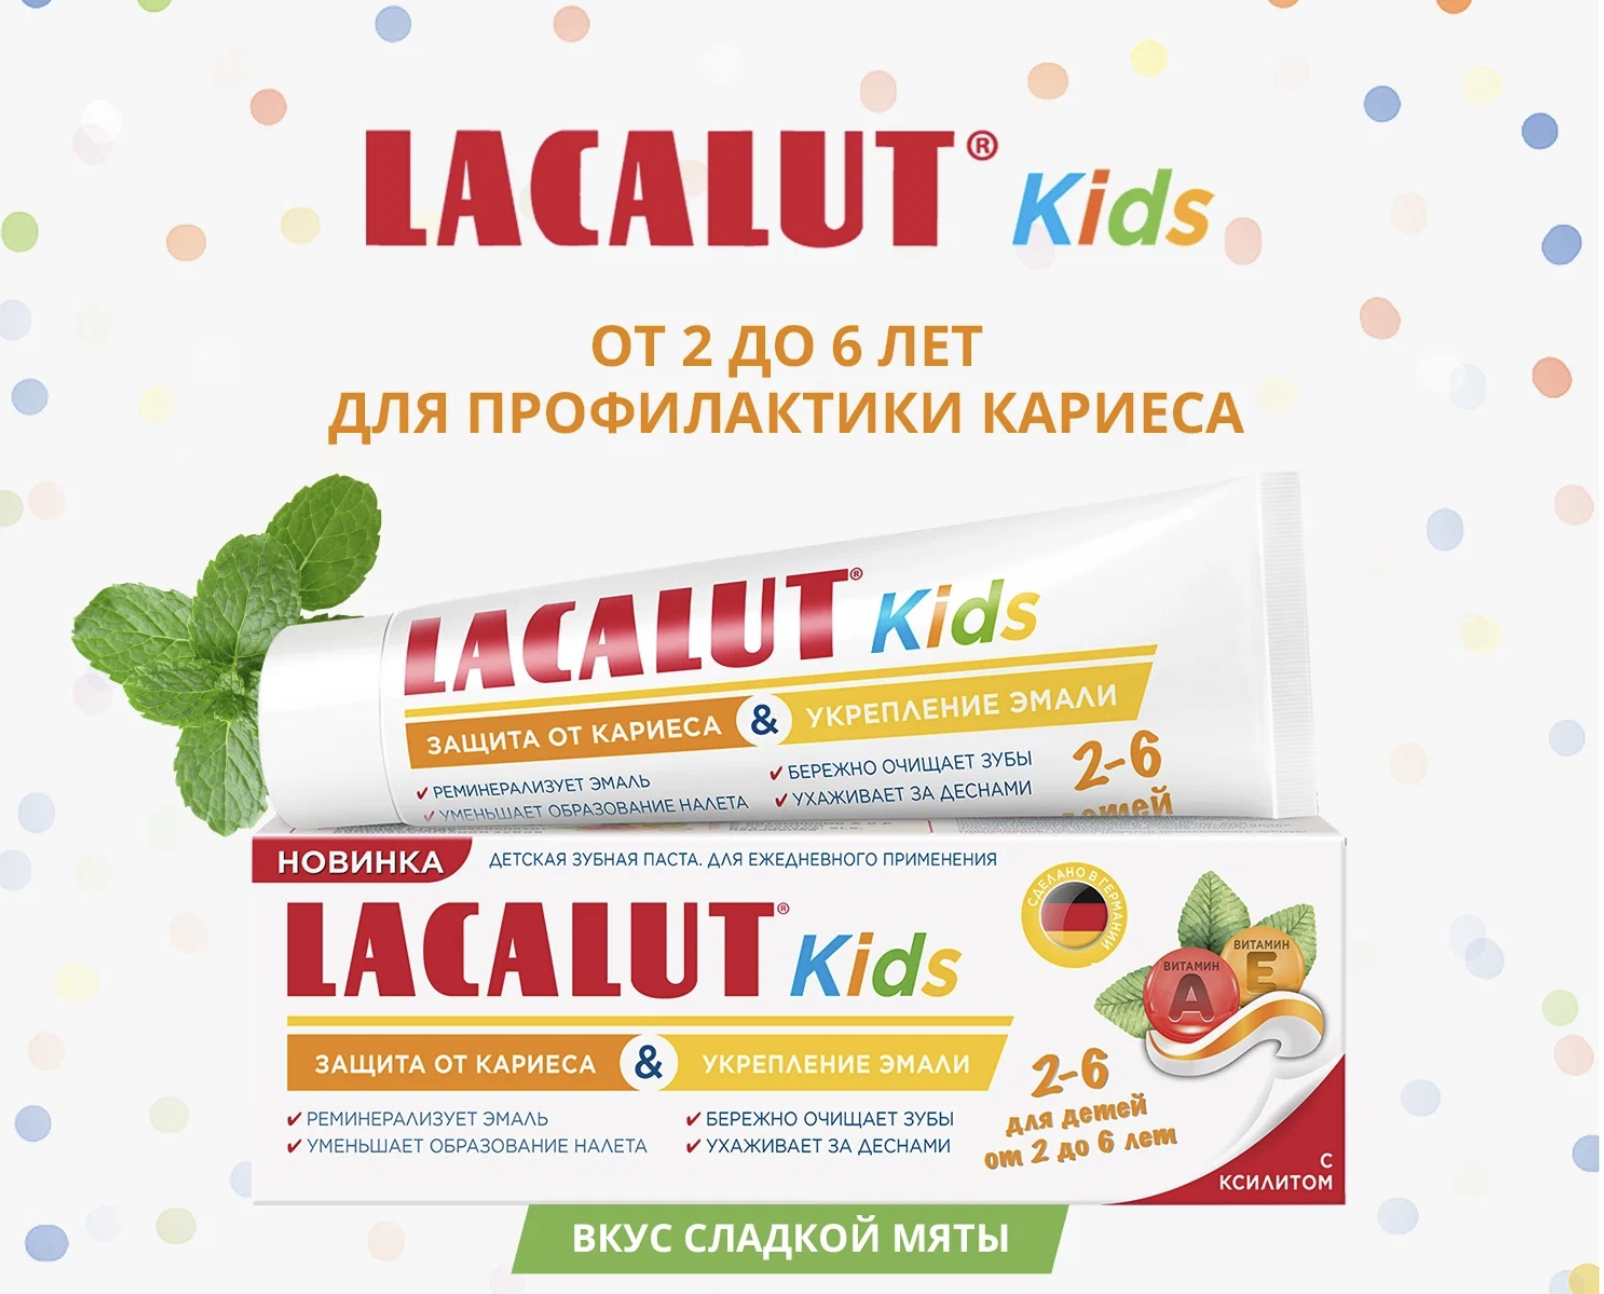    / Lacalut Kids -          2-6  65 